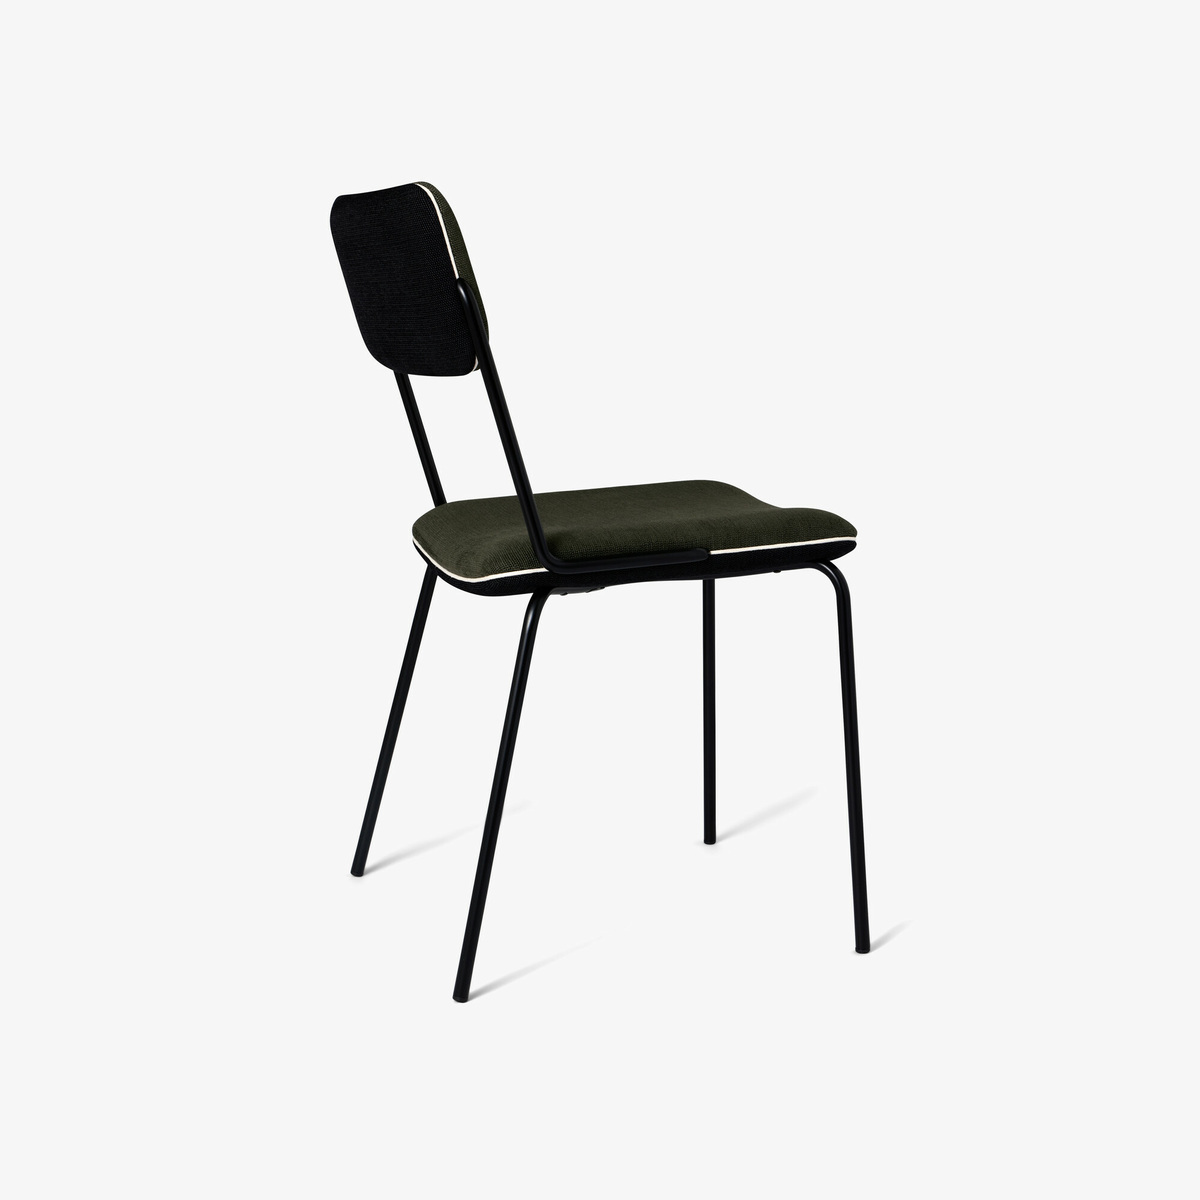 Chair Double Jeu, Green / Black - H85 x W51 x D43 cm - Cotton - image 3